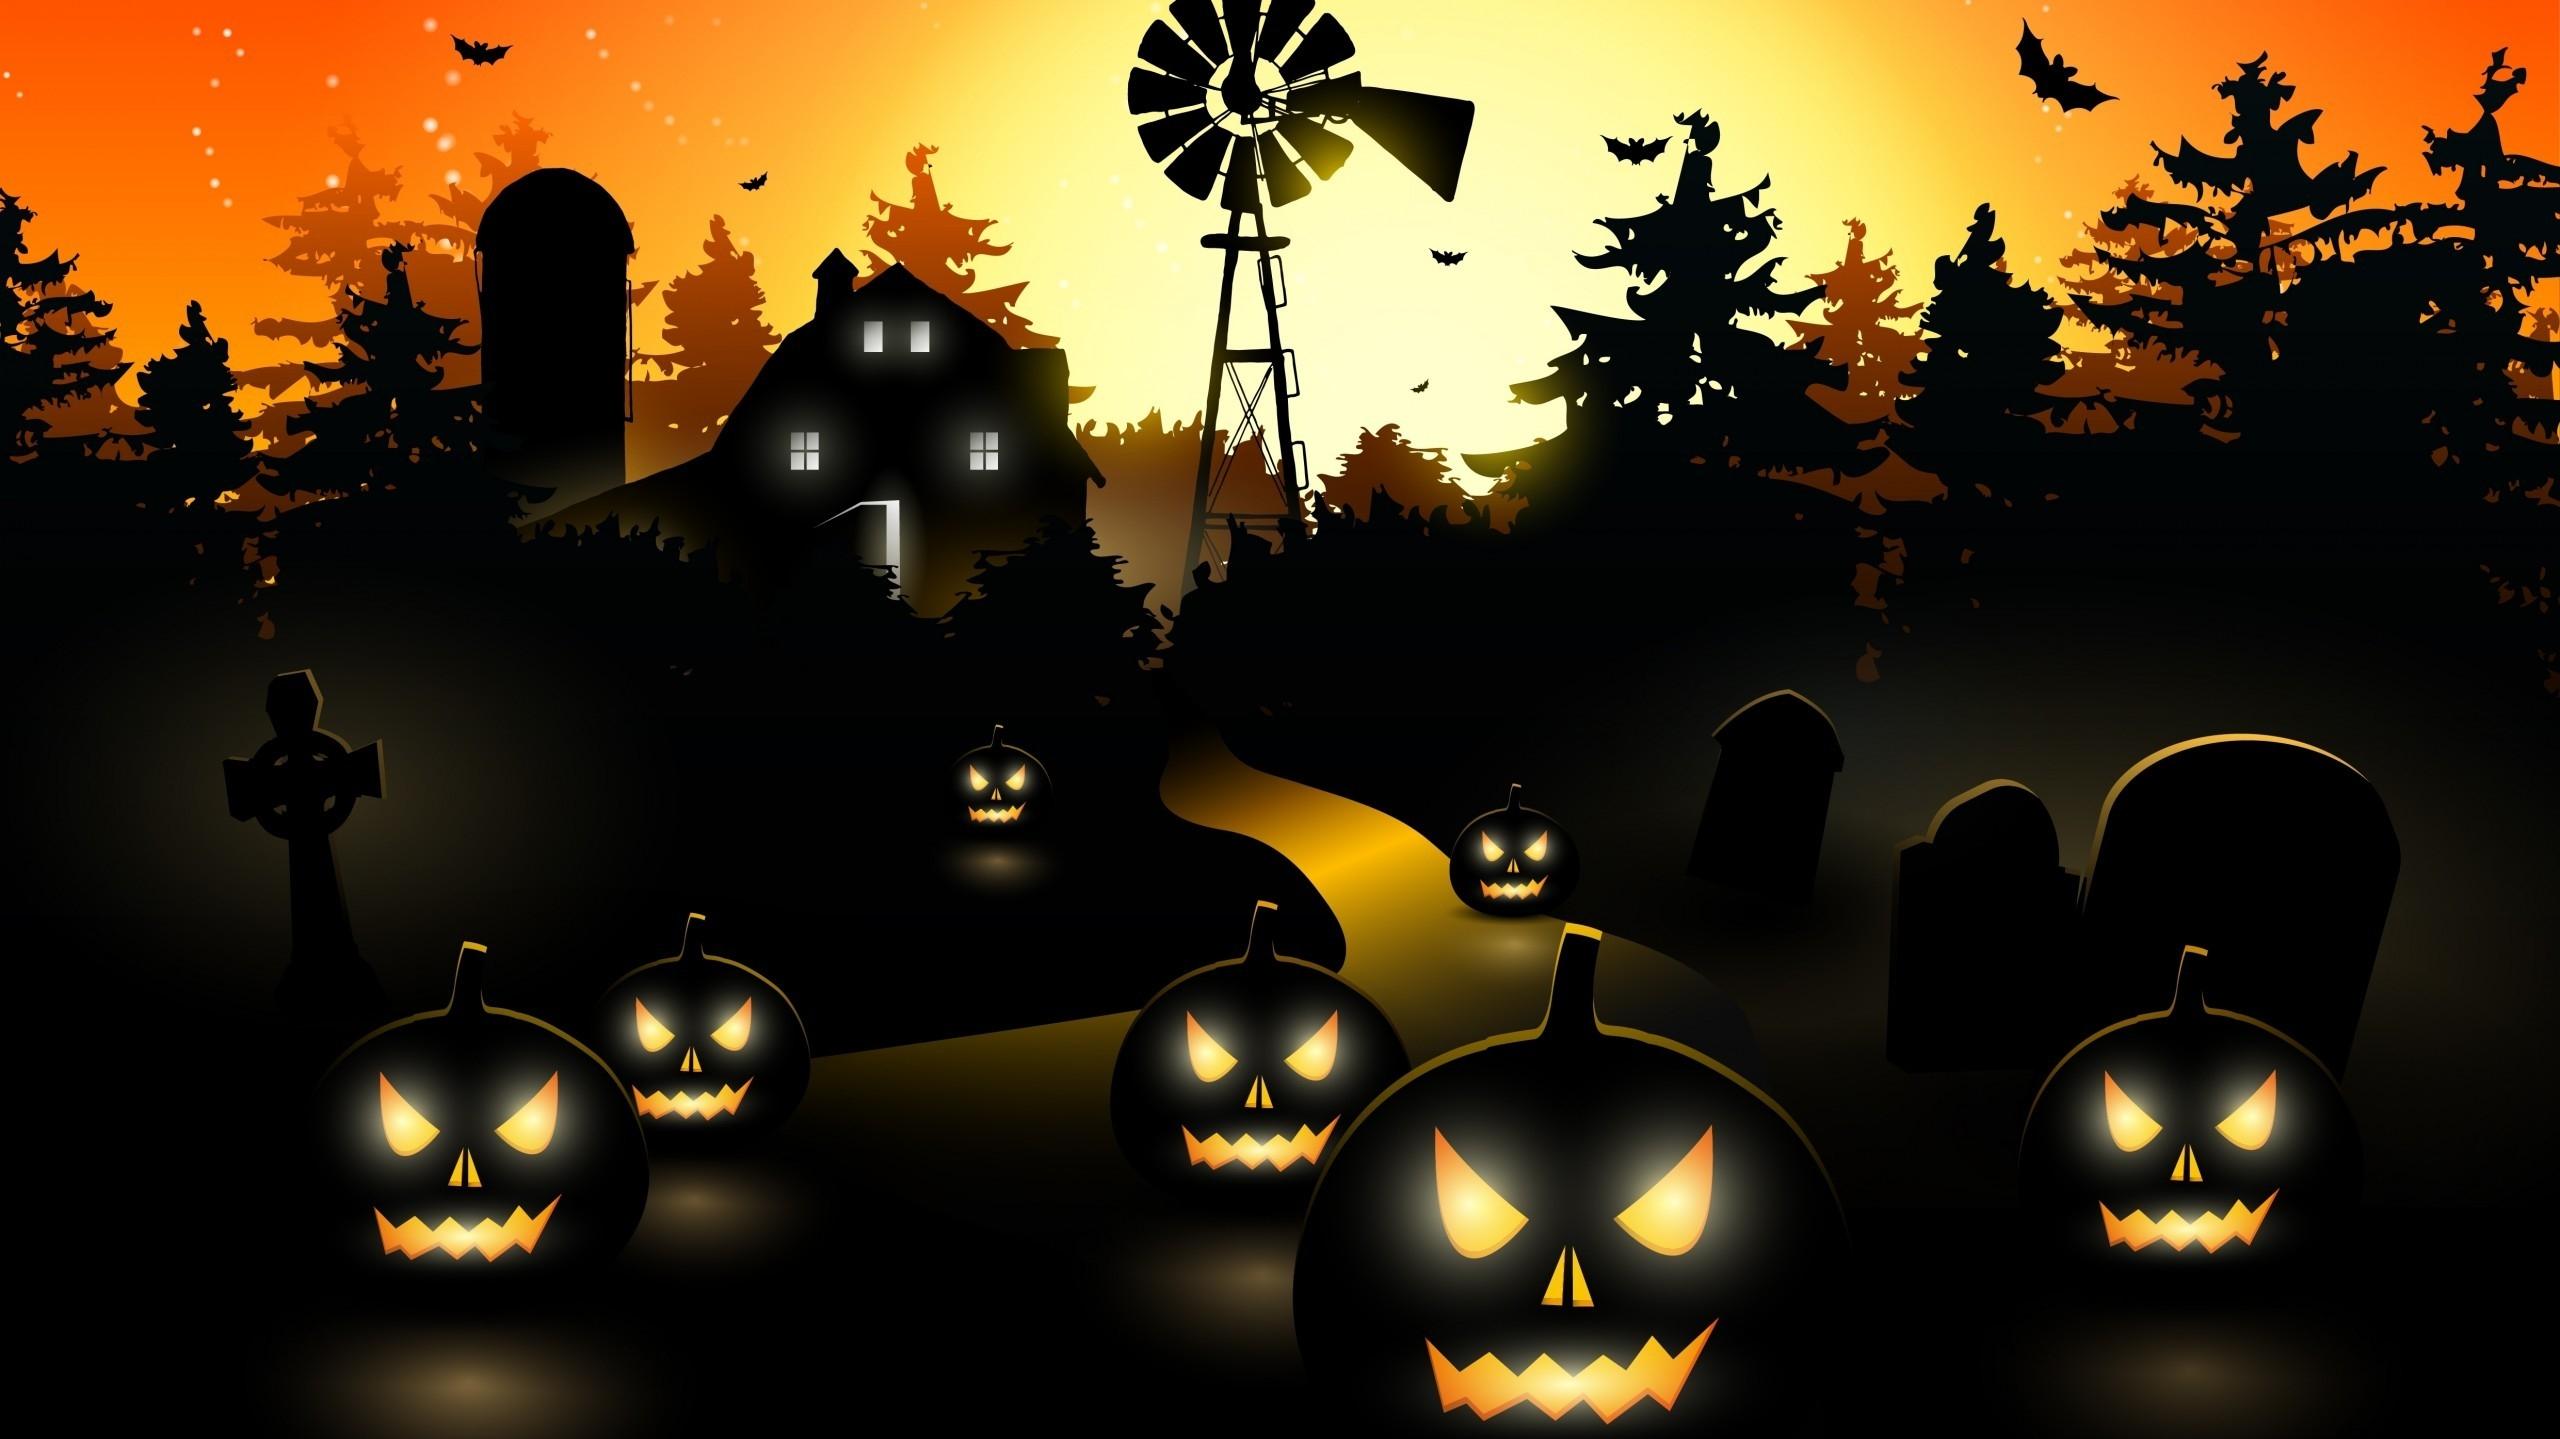 Halloween Black Pumpkins 2560x1440 HDTV Wallpaper